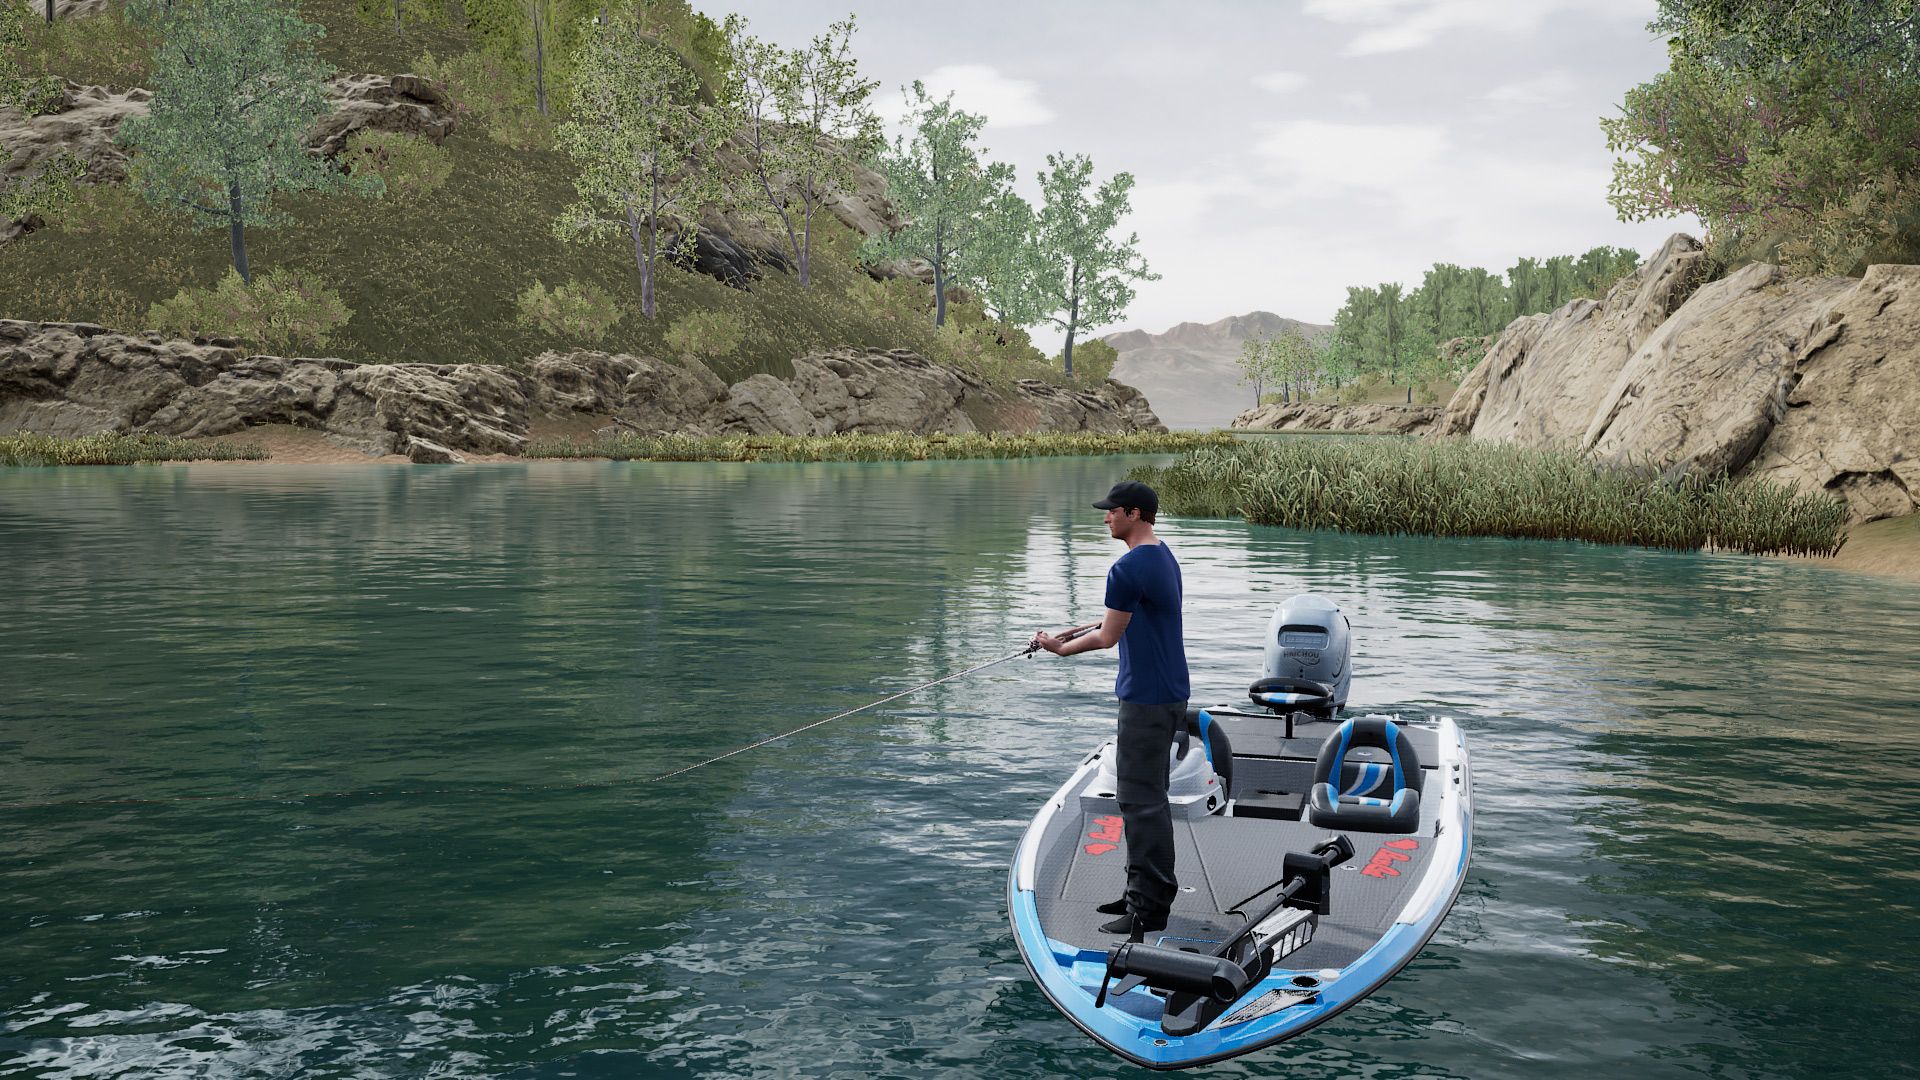 Fishing Sim World: Pro Tour - Lake Williams